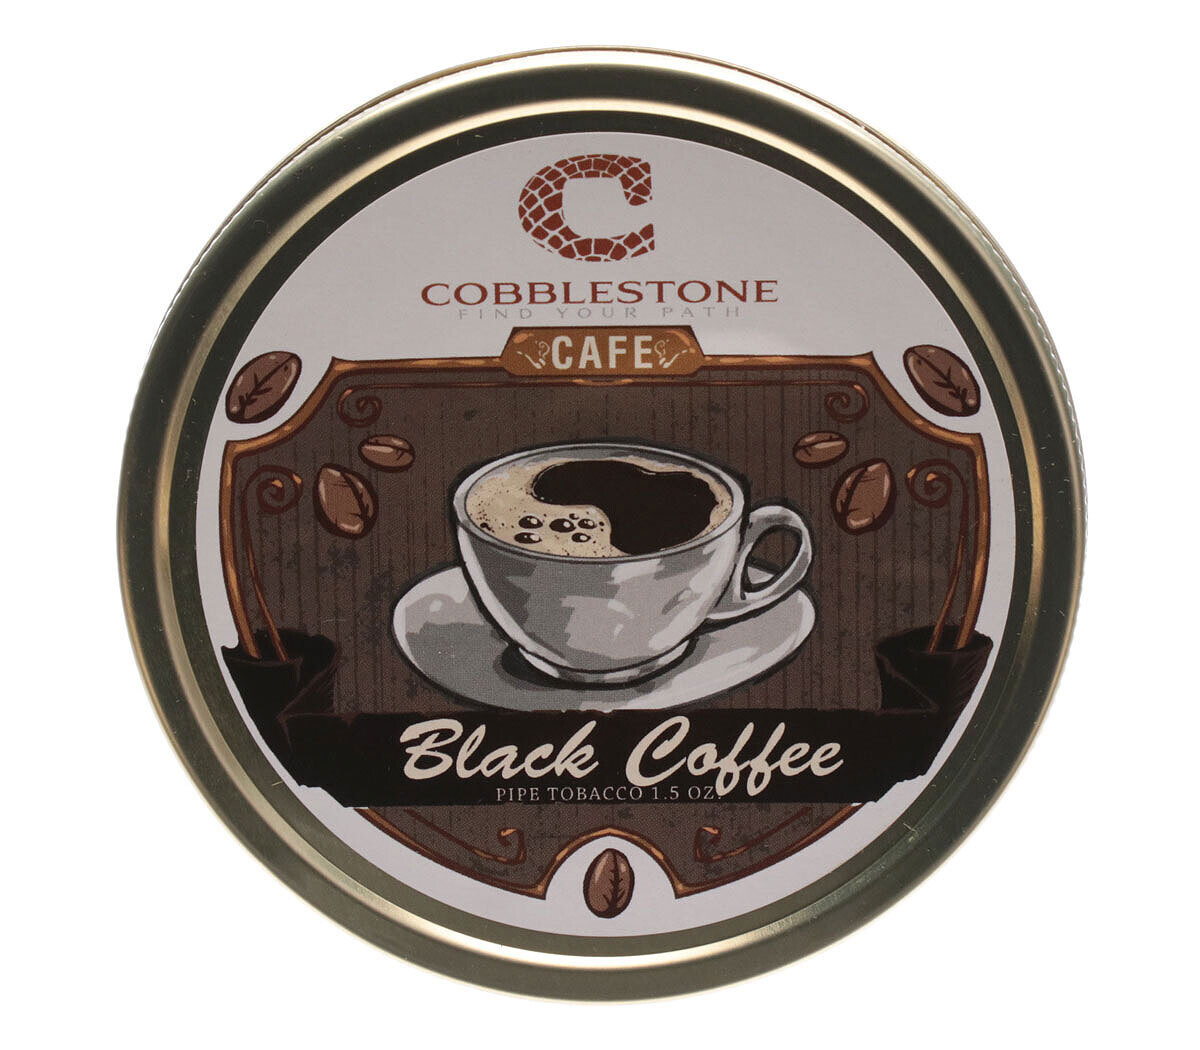 Cobblestone Black Coffee Pipe Tobacco 1.5oz Tin